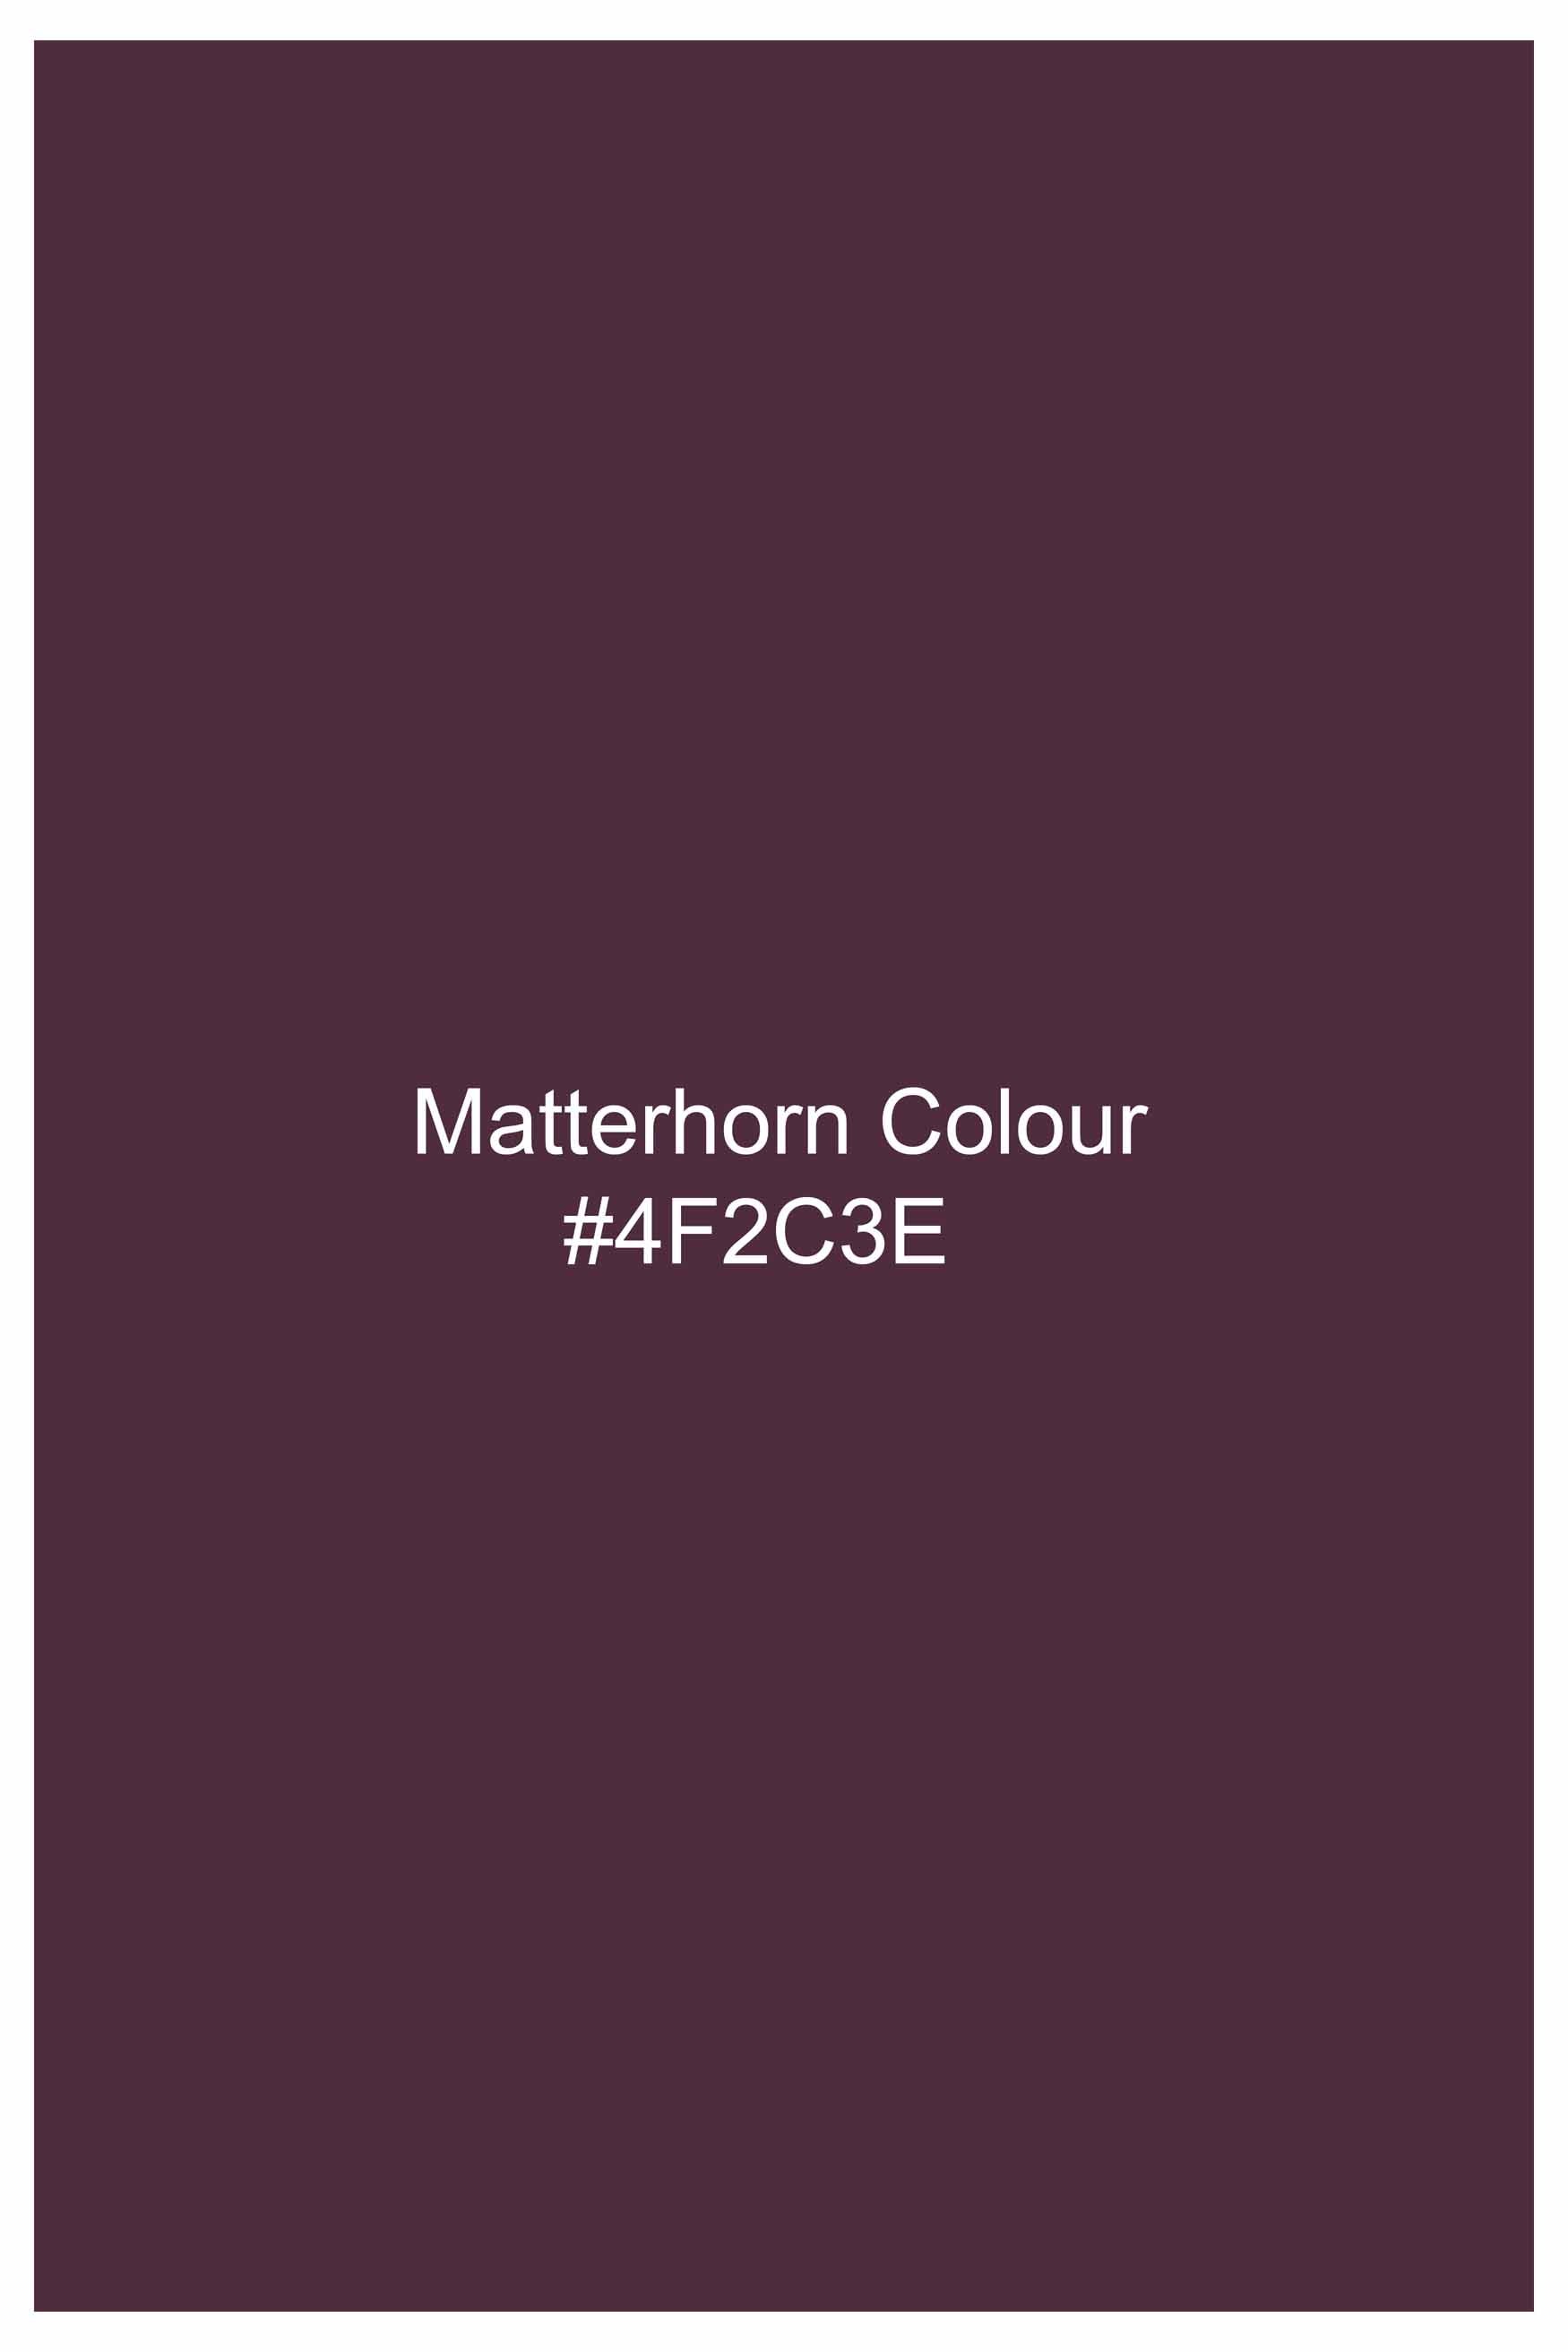 Matterhorn Maroon Subtle Sheen Super Soft Premium Cotton Tuxedo Shirt